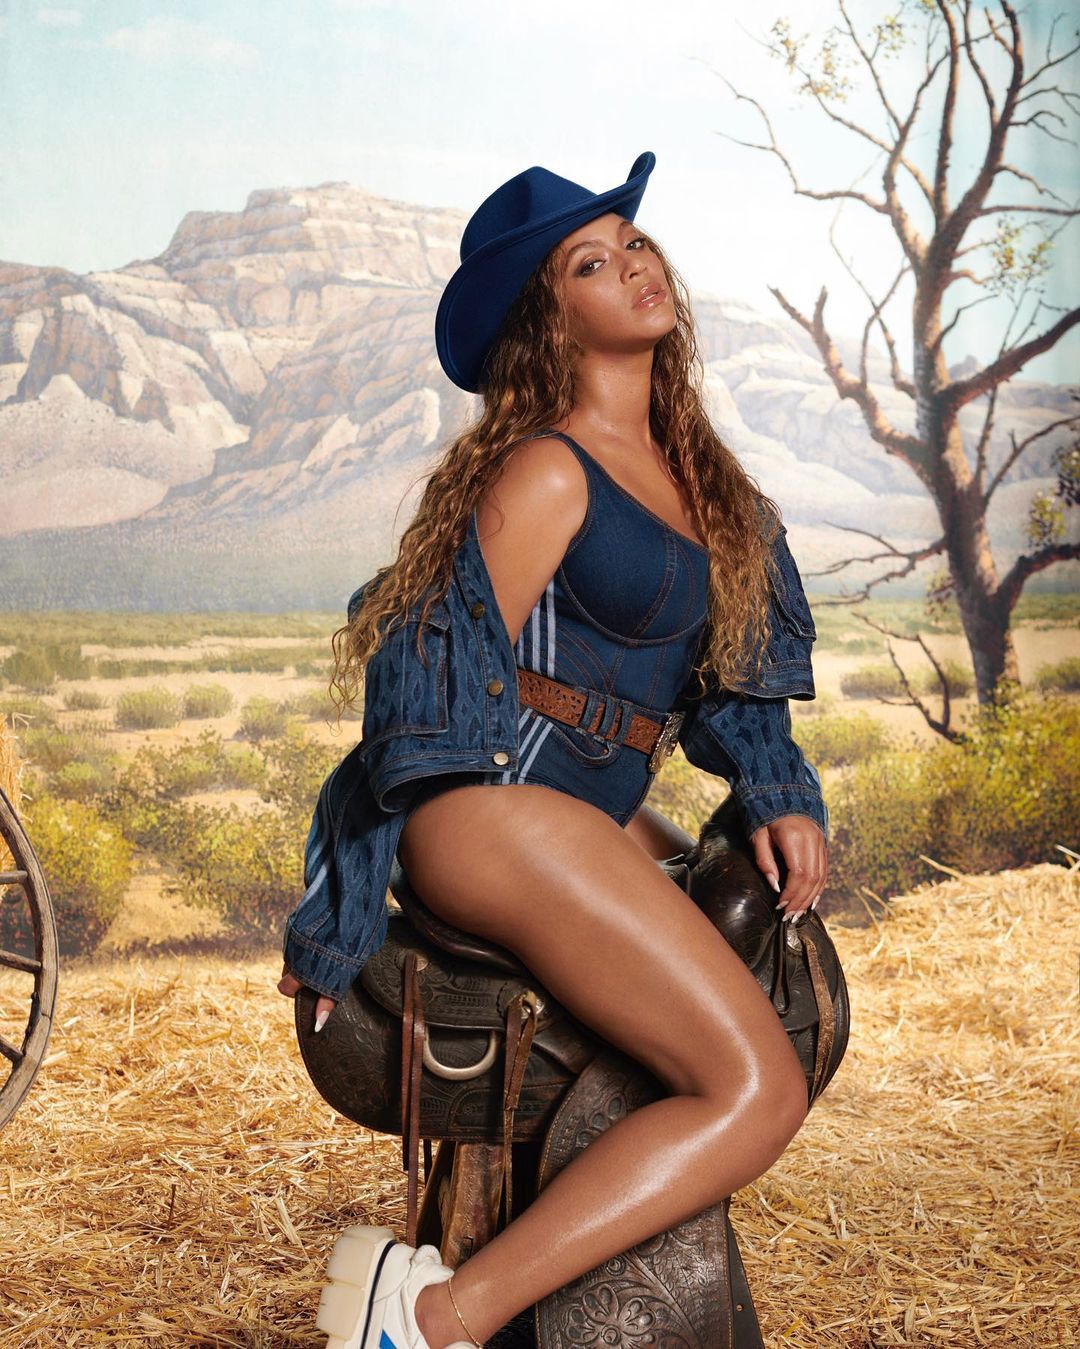 Beyoncé's Adidas x Ivy Park Announces Third Collection